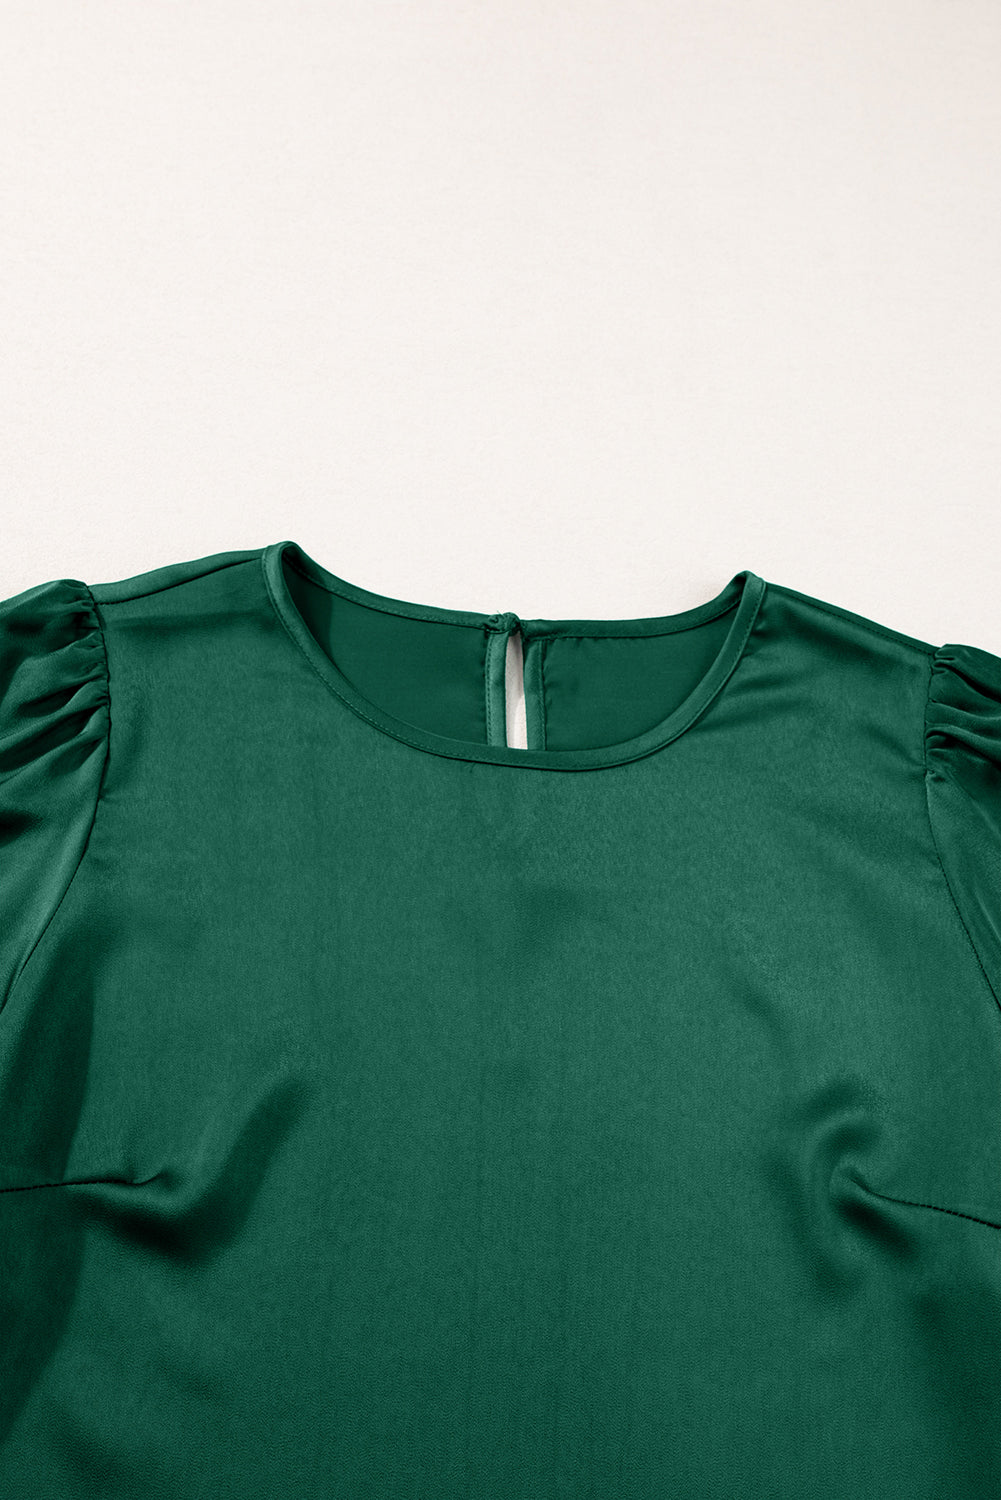 Schwarzgrüne, einfarbige Satin-Bluse mit Schlüsselloch-Rückseite und weiten Ärmeln